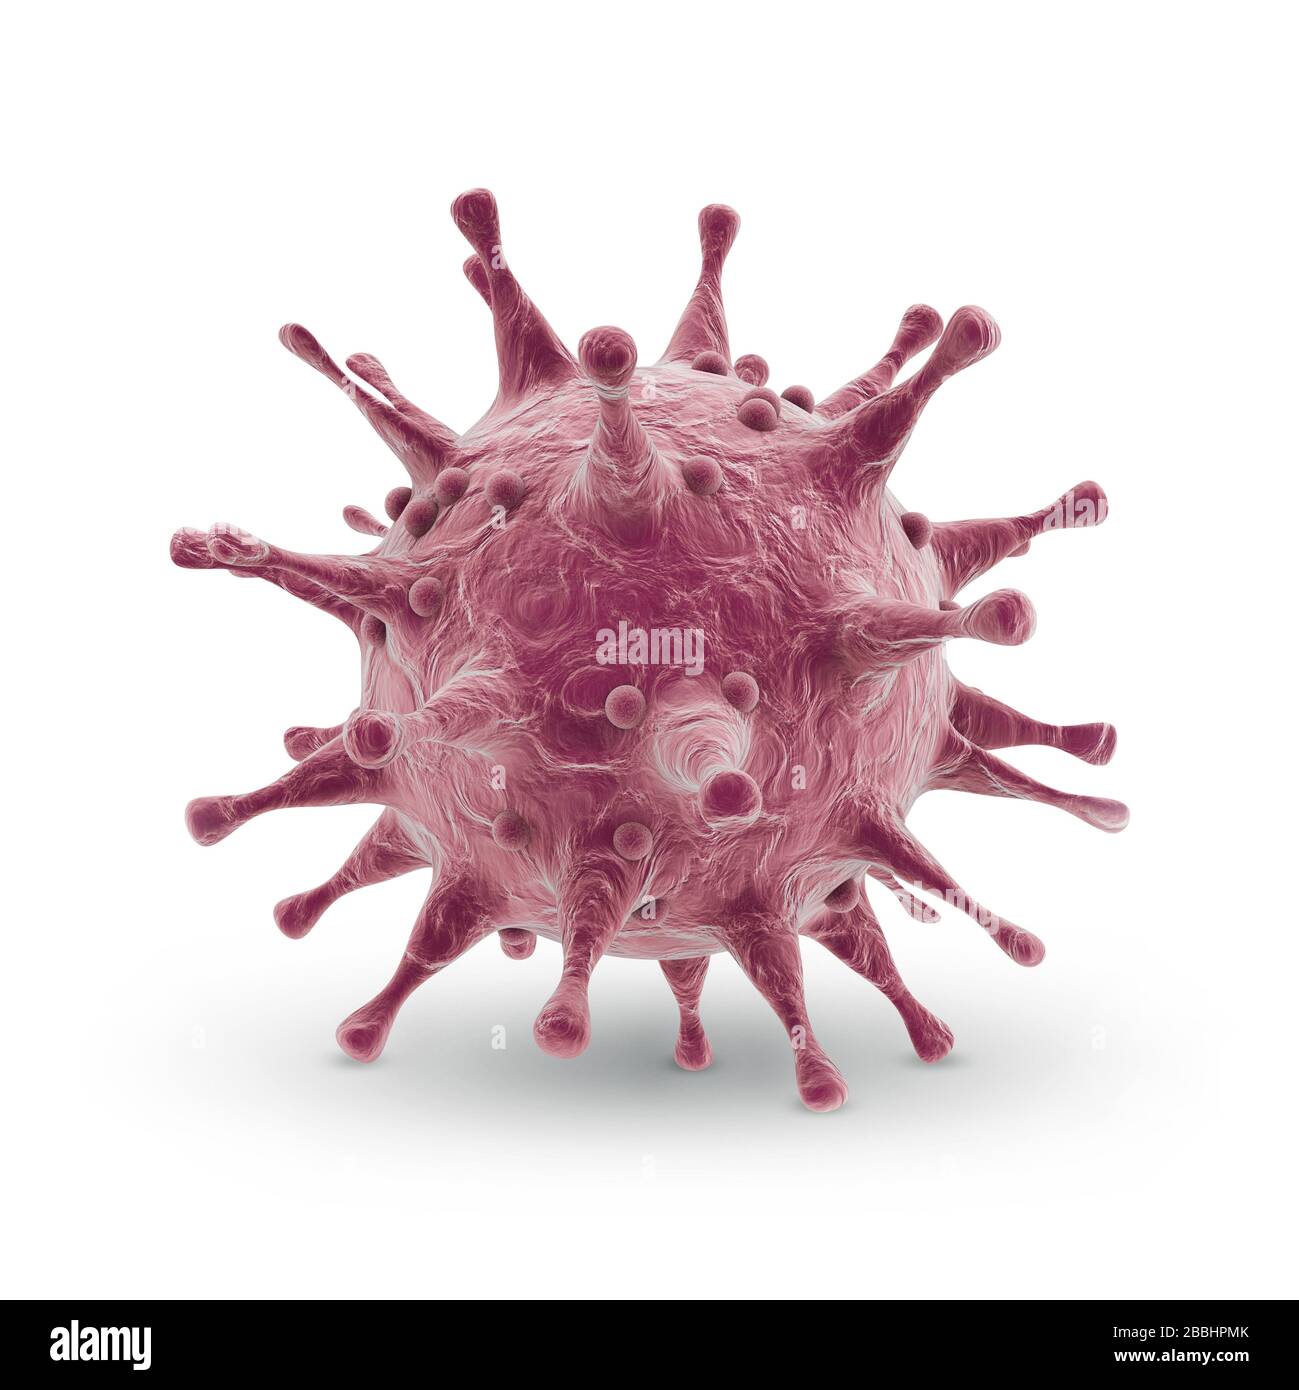 Covid-19 Coronavirus 3d mostra un'illustrazione su sfondo bianco. Covid-19 concetto di rischio medico pandemico con cellule di malattia. Foto Stock